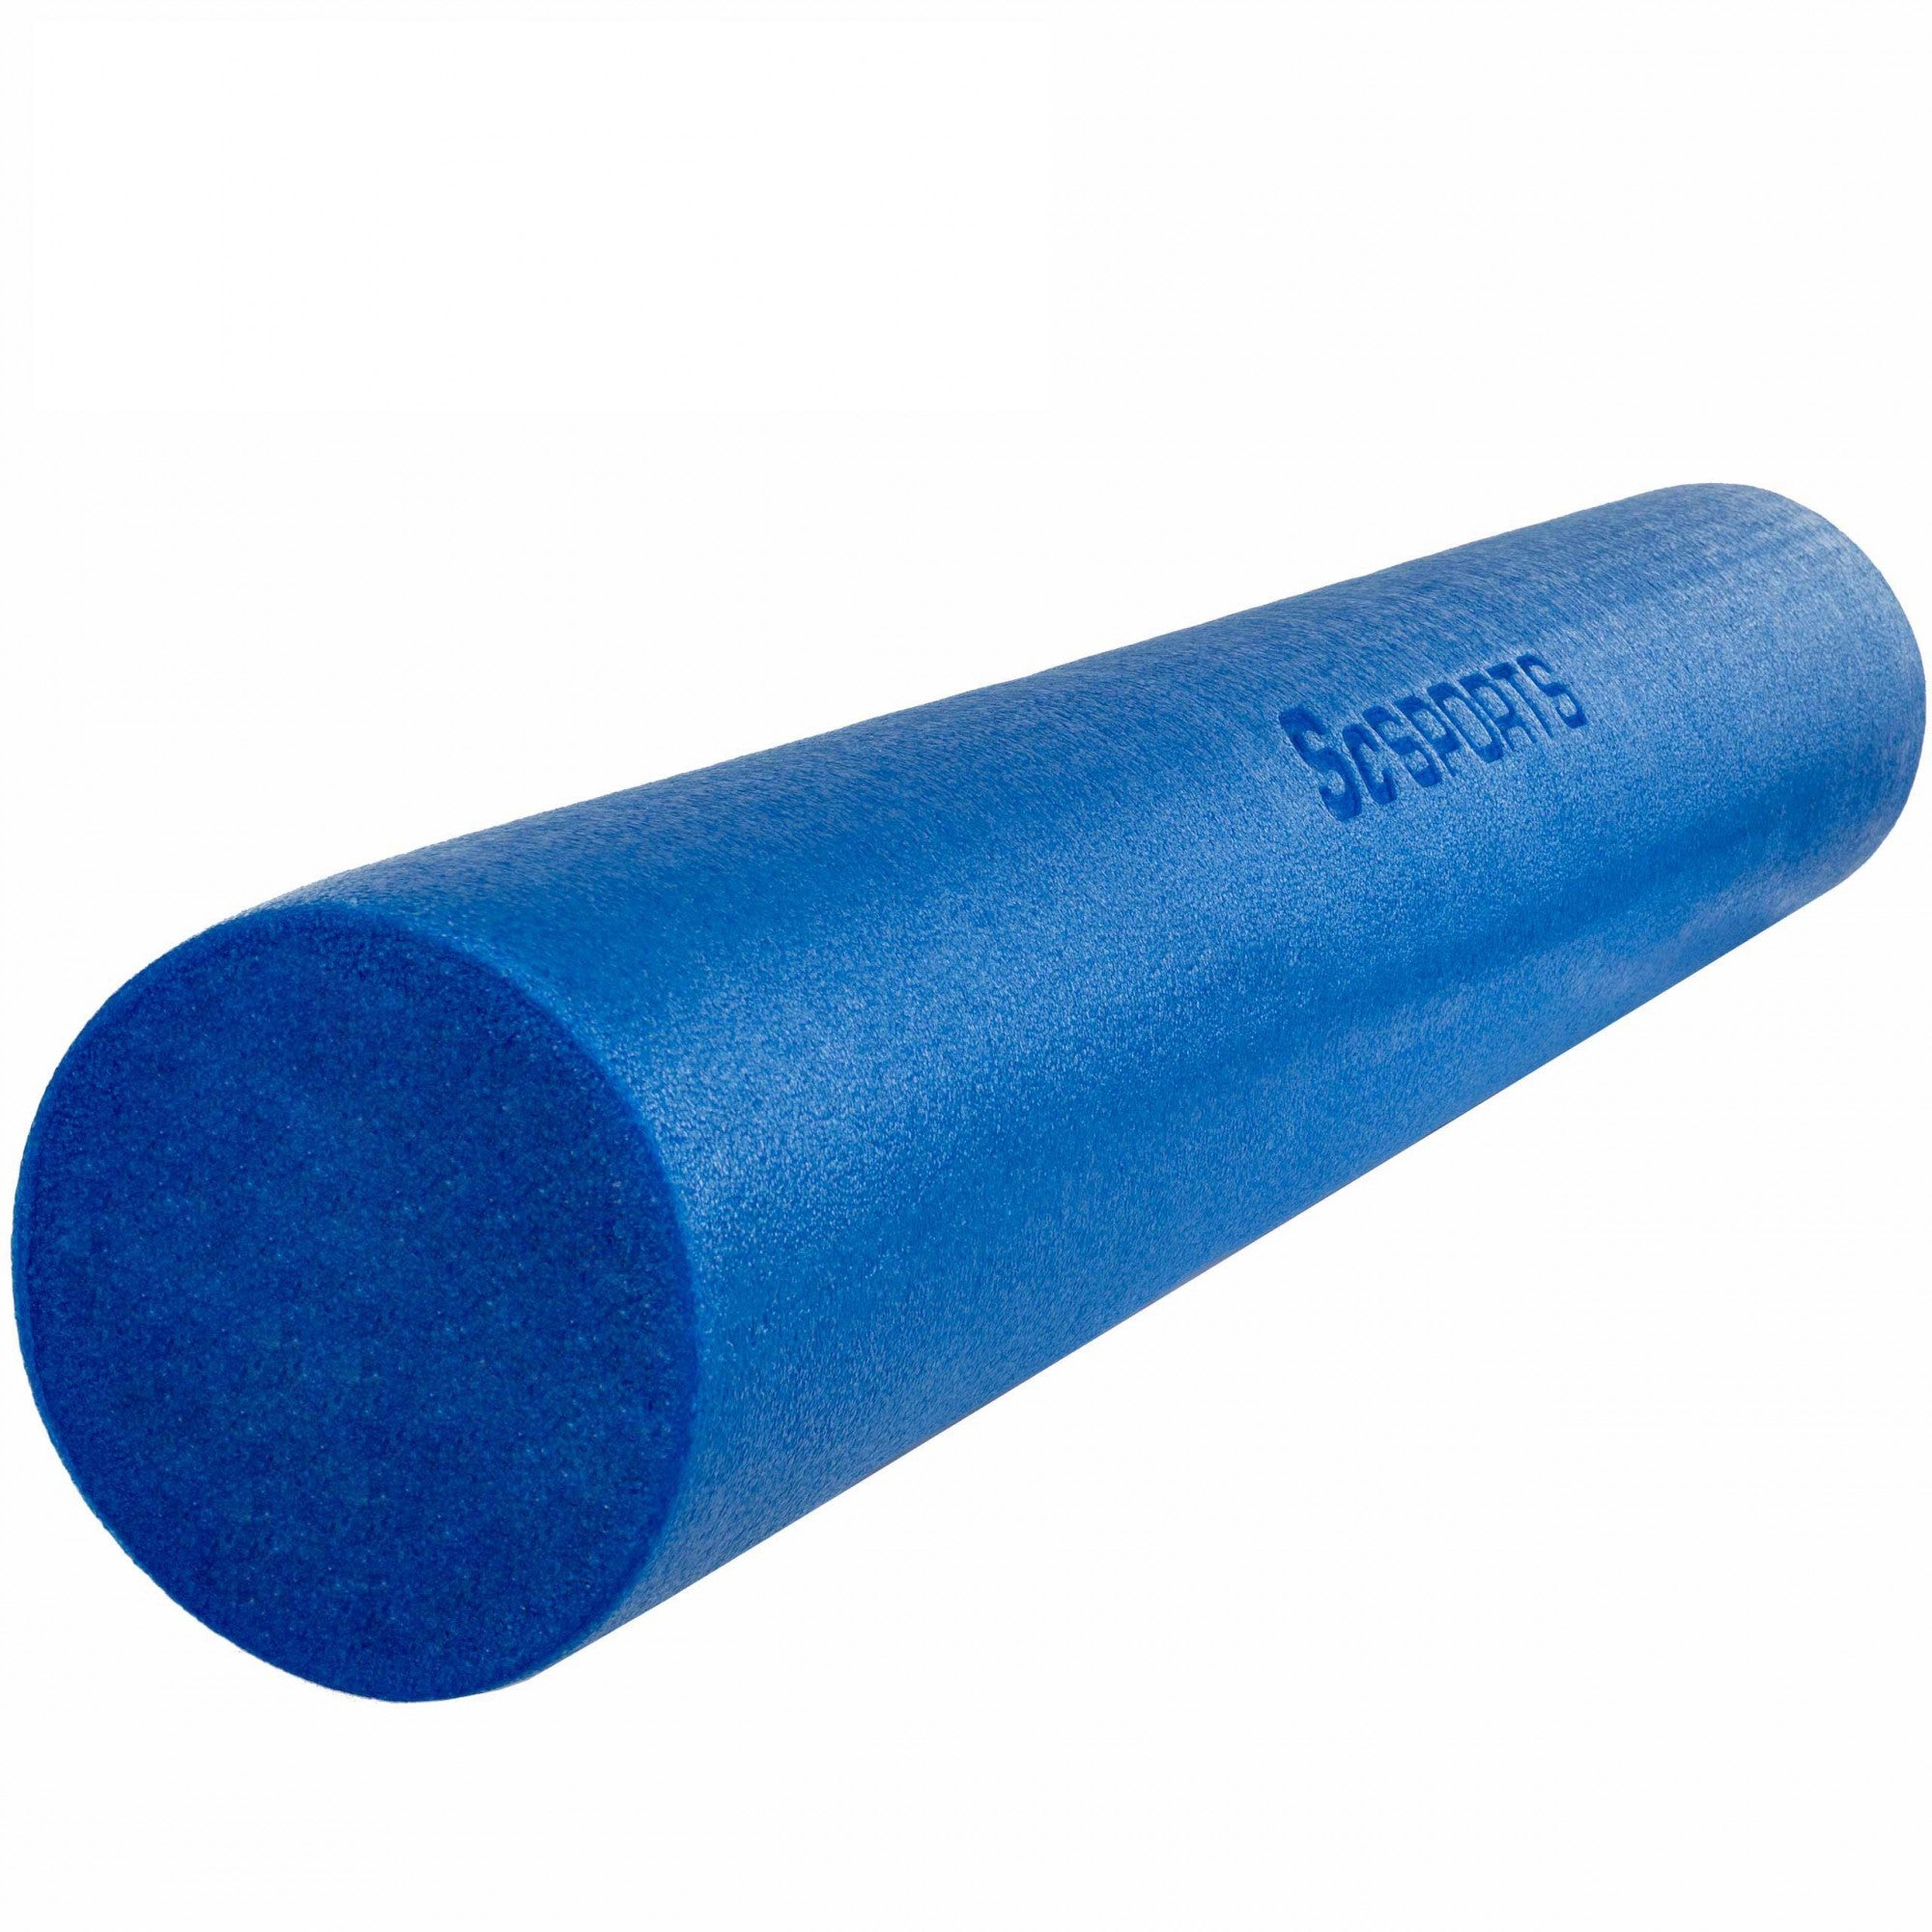 Billede af Foam roller til yoga, pilates, 90 x 15 cm, skum, blå